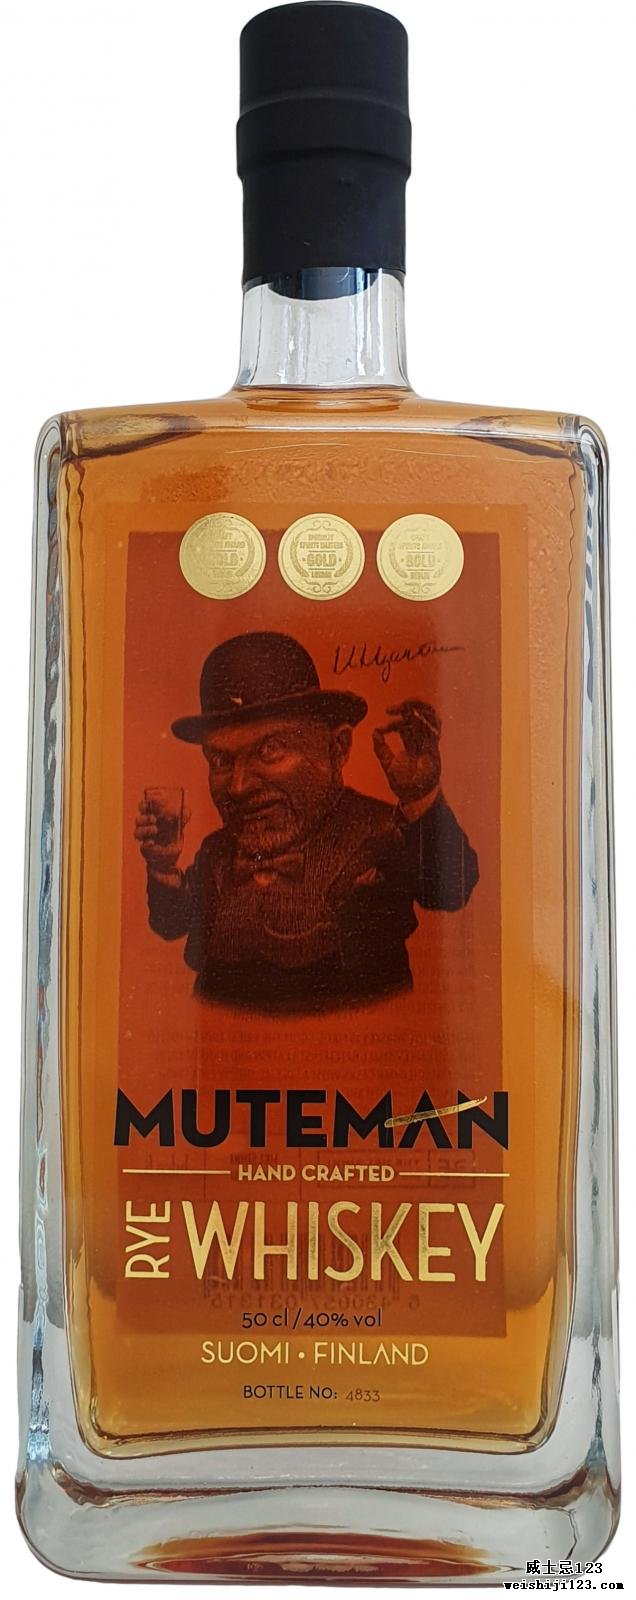 Helsinki Whiskey Muteman Rye Whiskey